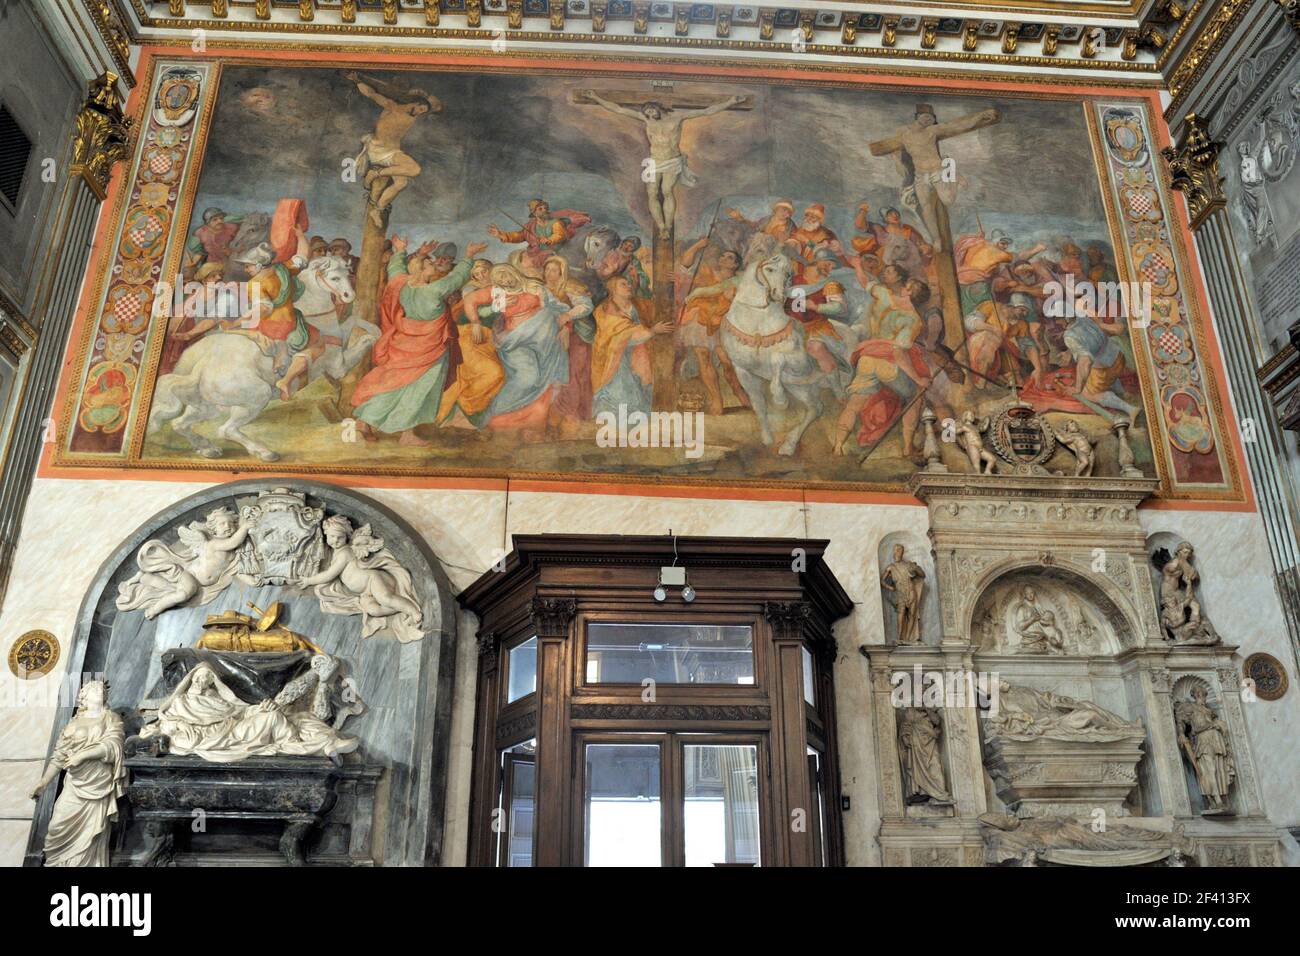 Al fresco painting immagini e fotografie stock ad alta risoluzione - Alamy